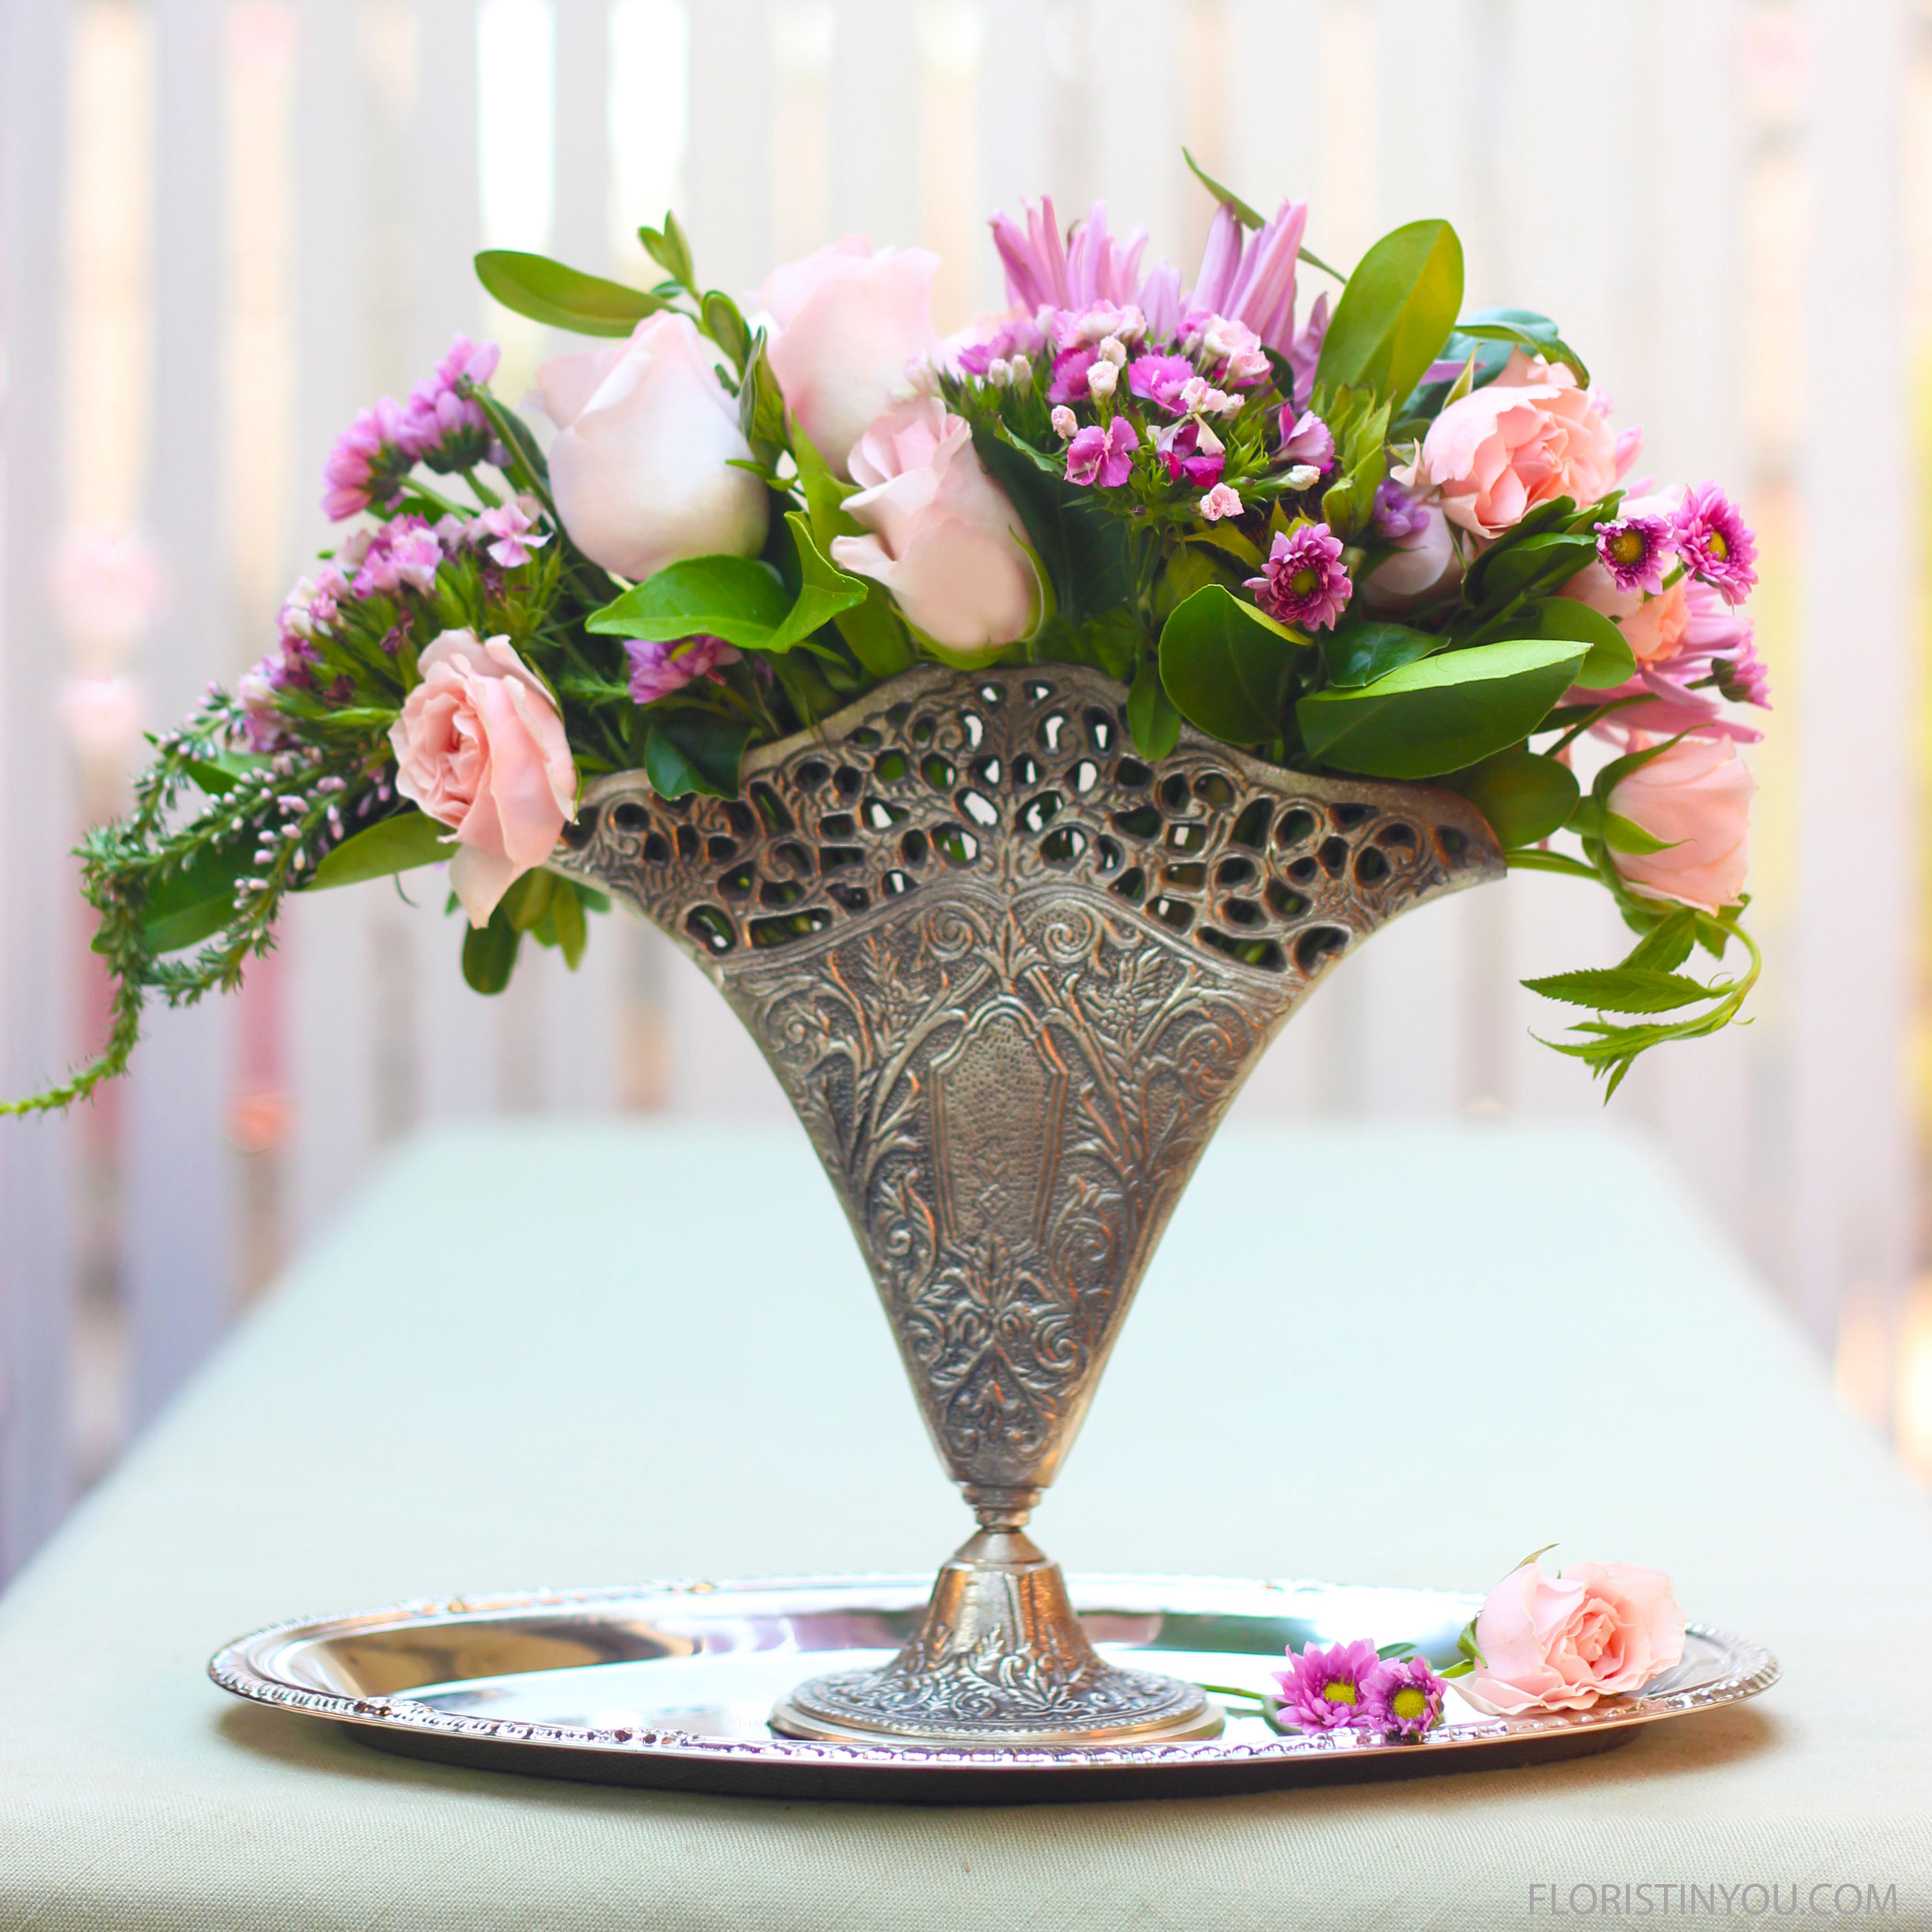 Vintage Fan Vase with a Petite Bouquet